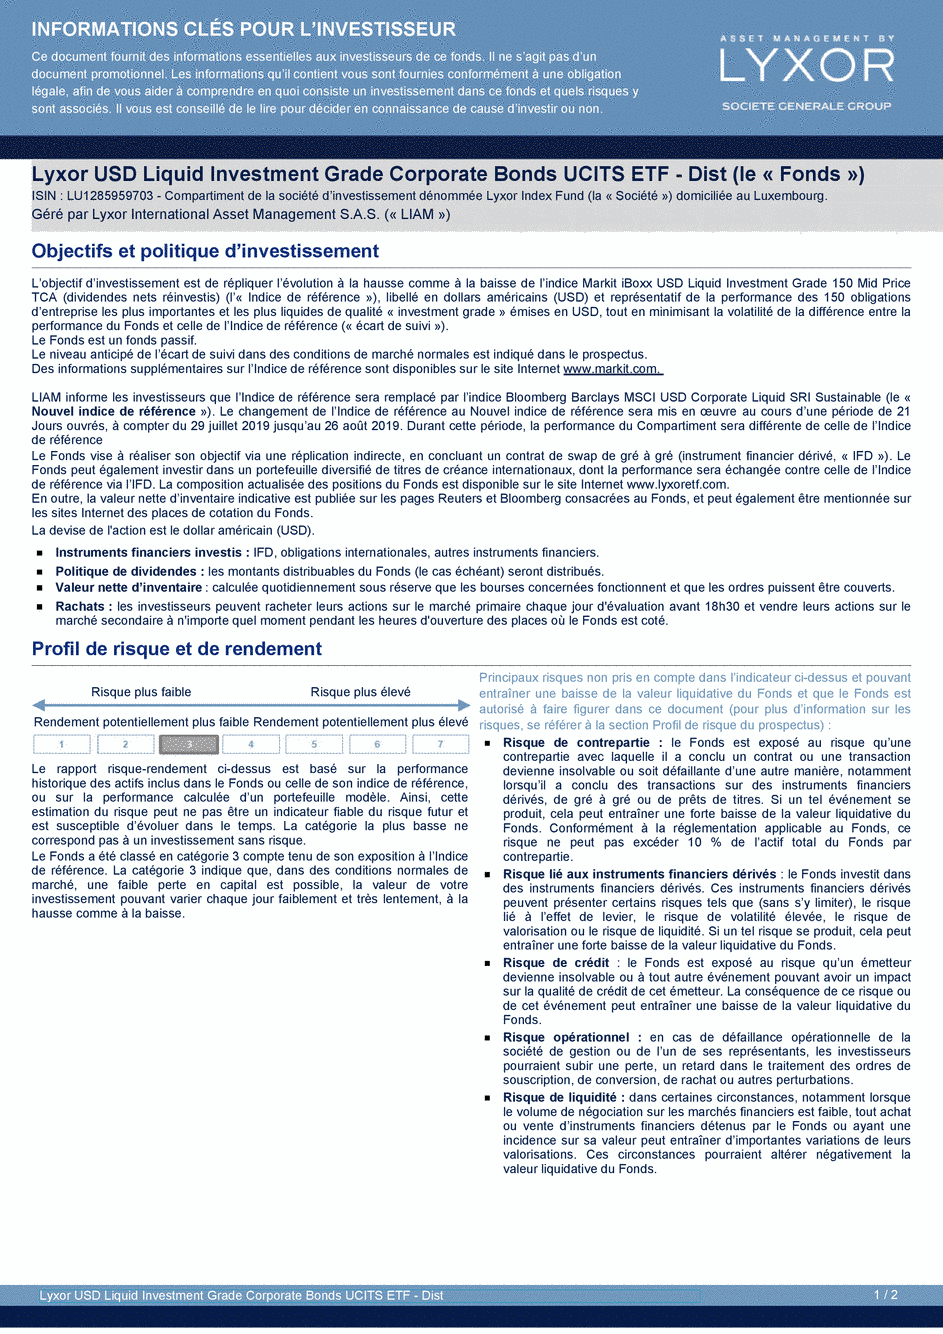 DICI Lyxor ESG USD Corporate Bond (DR) UCITS ETF - Dist - 29/07/2019 - Français